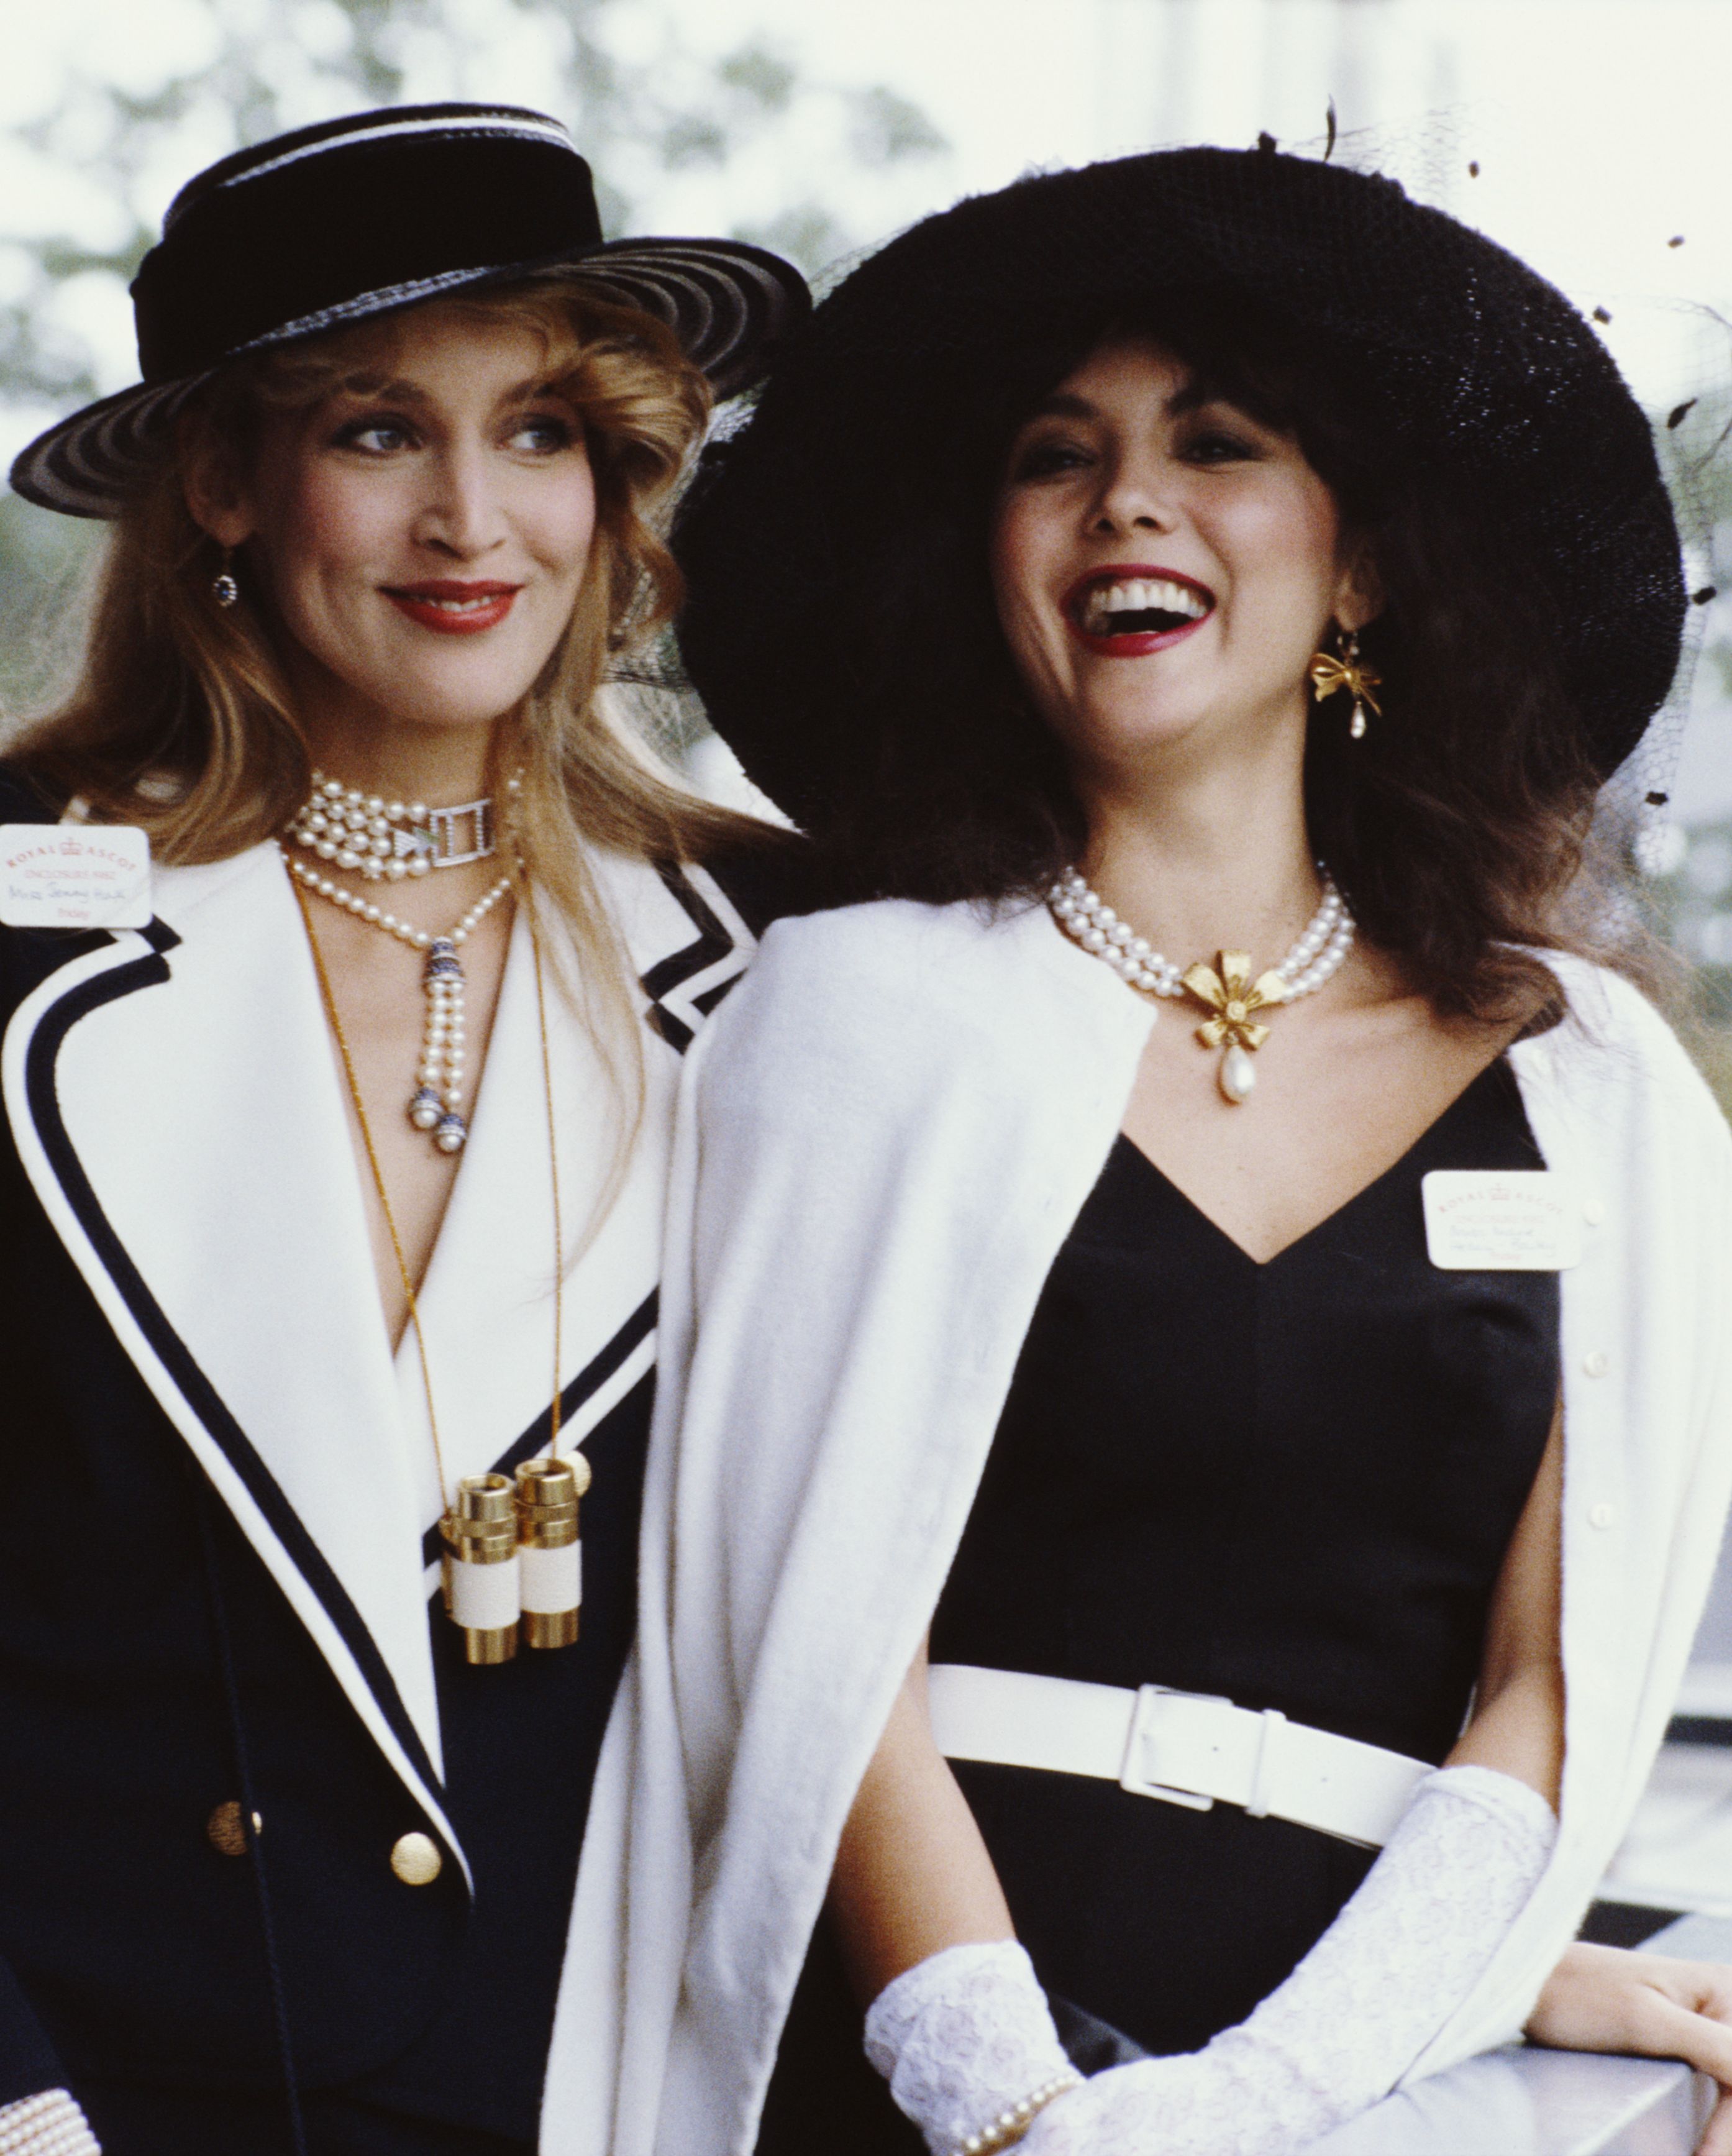 1980s clothing